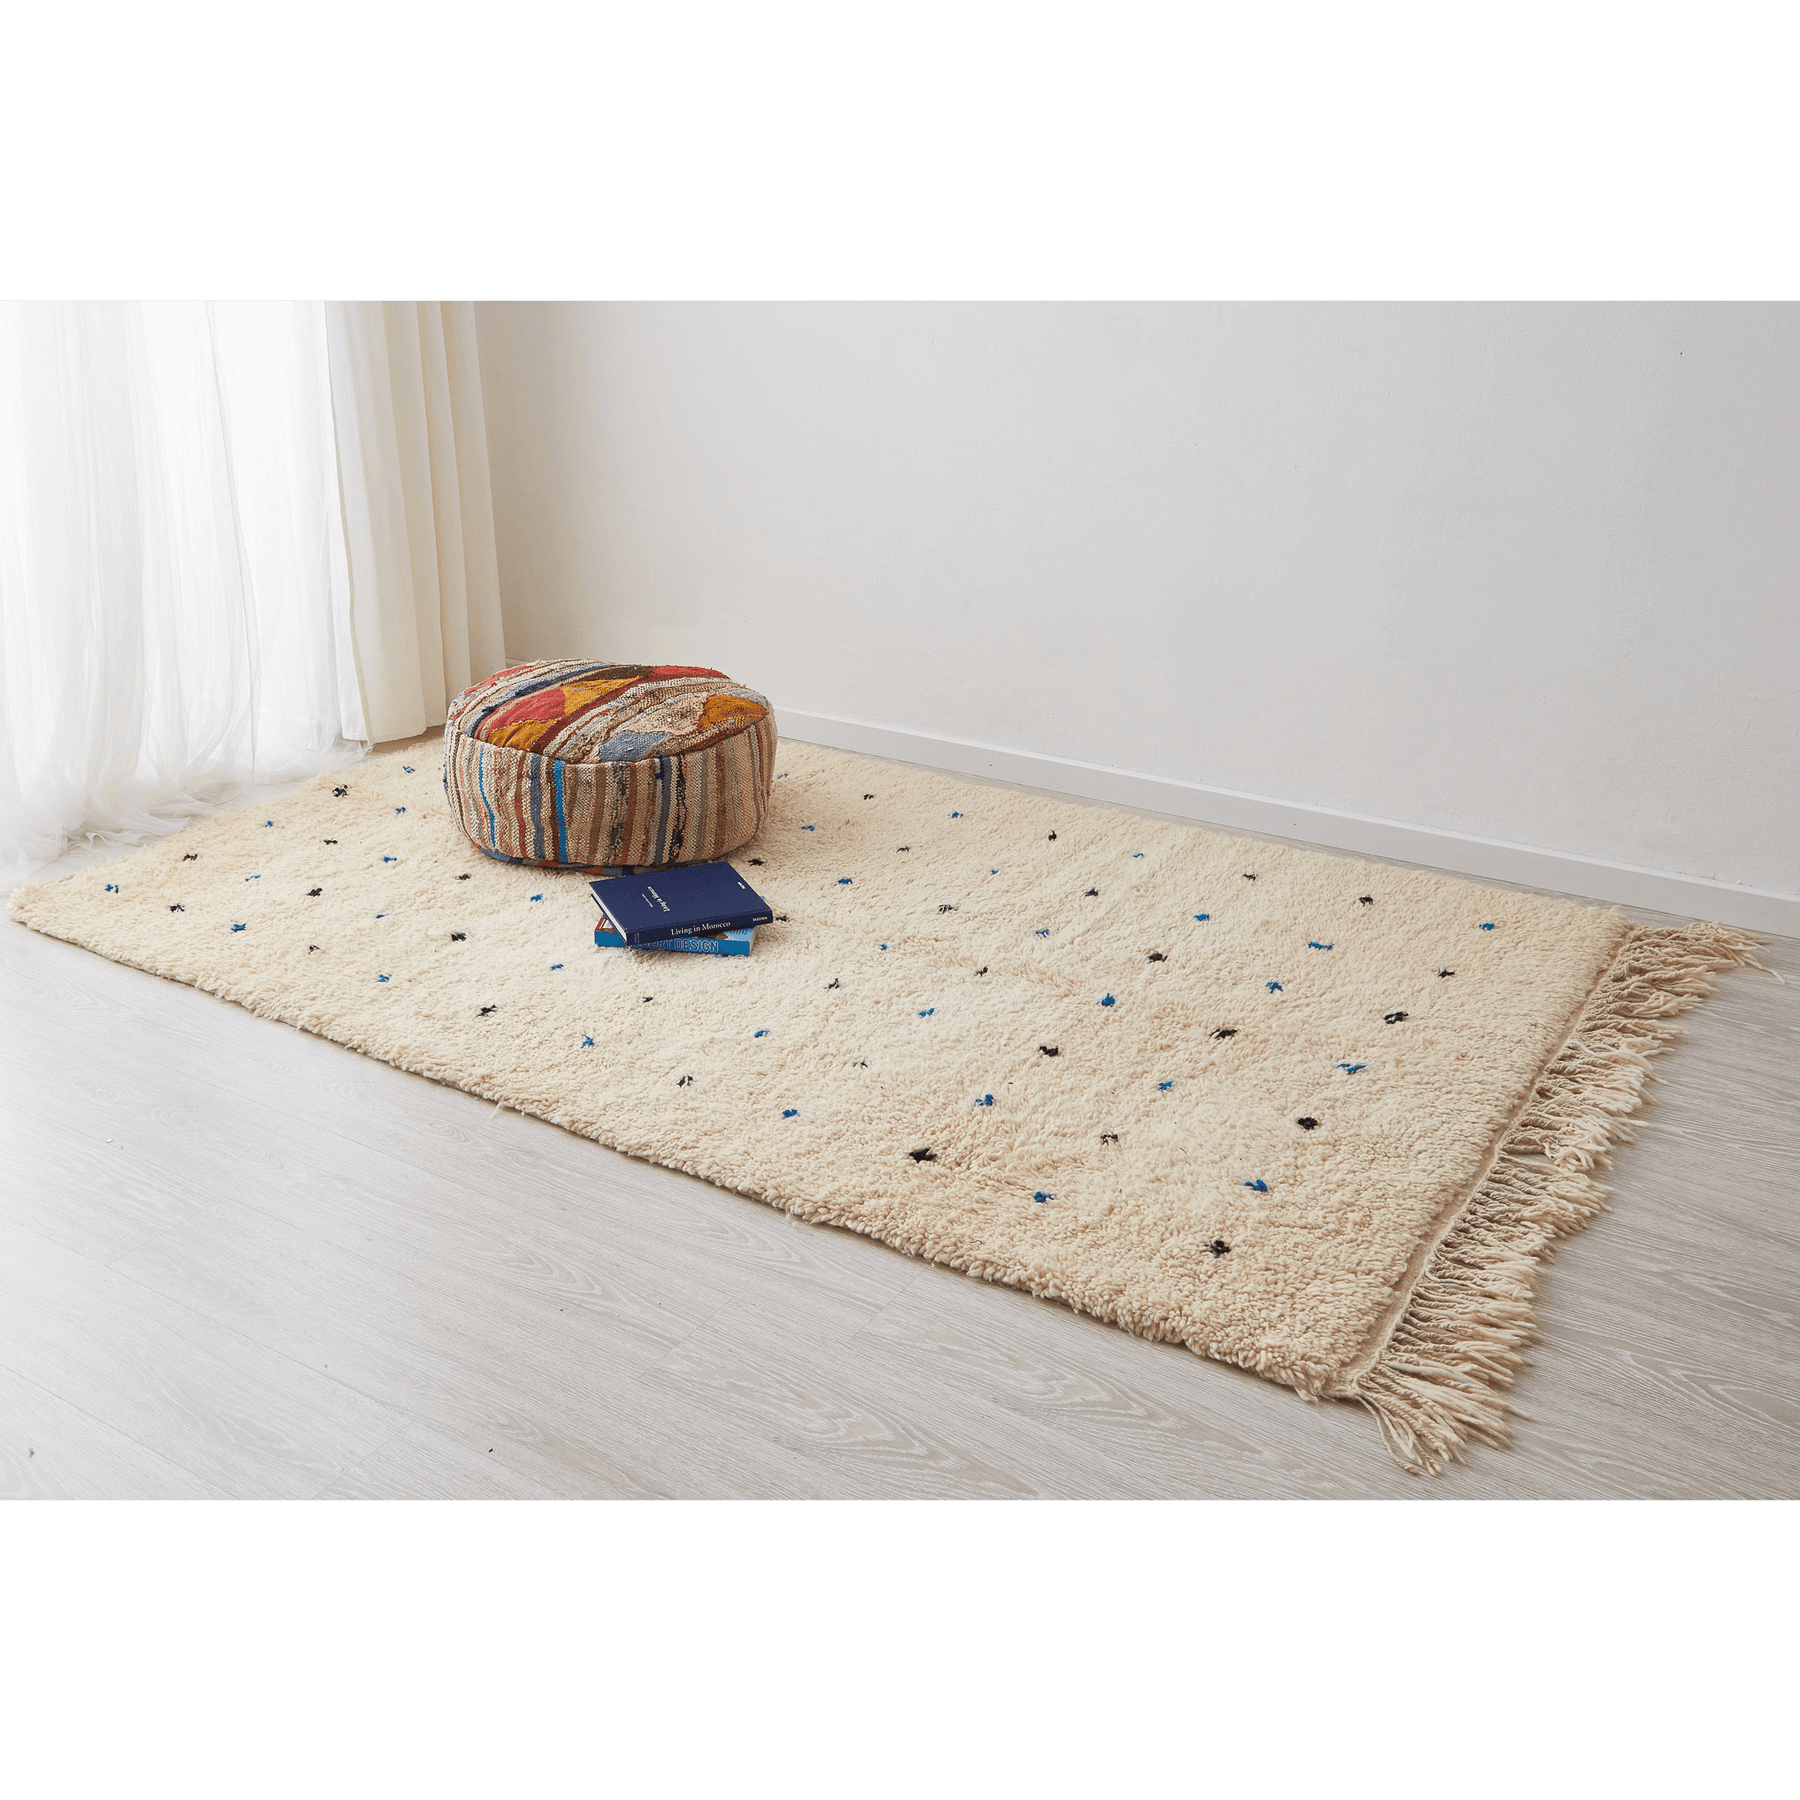 tappeto beni ourain in morbida lana bianca con pois neri e azzurri disteso sul pavimento